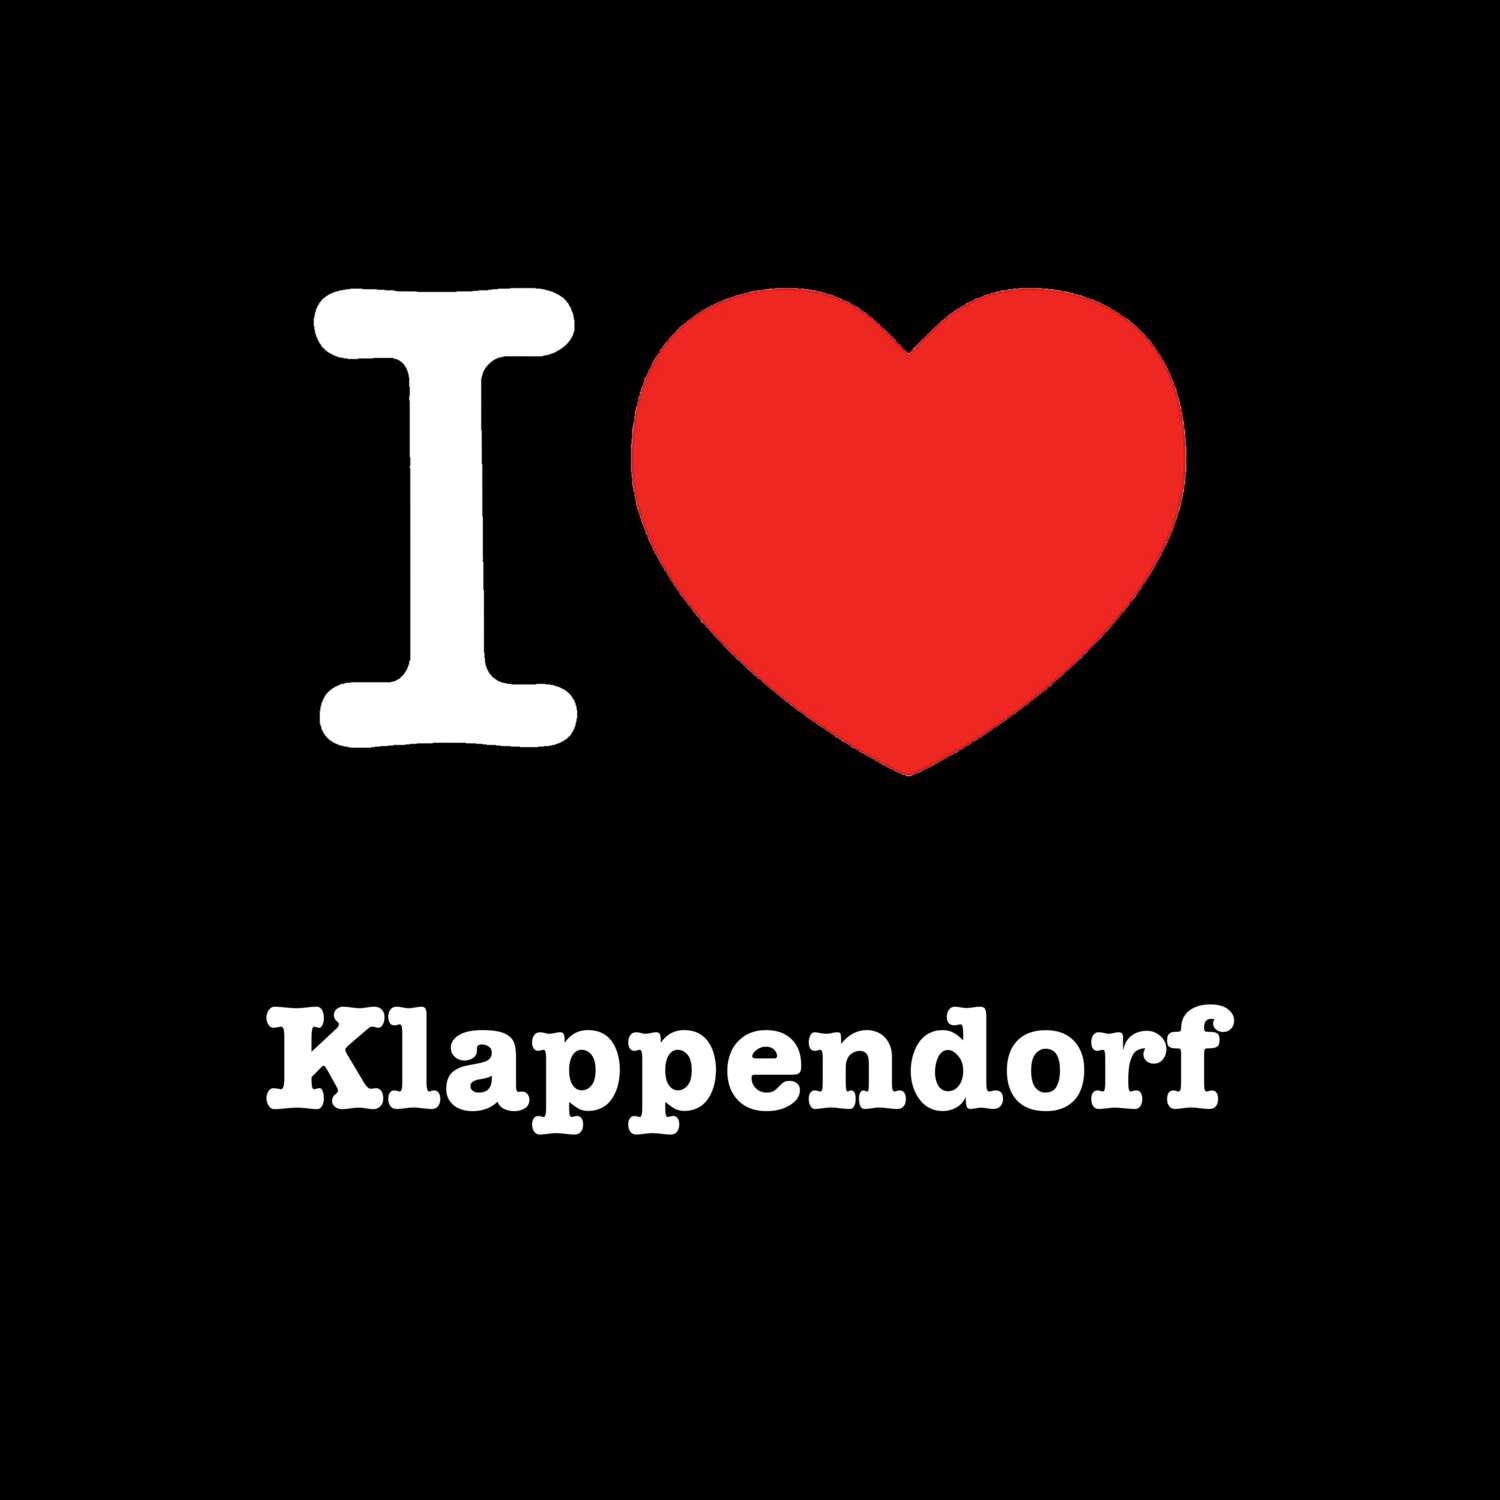 Klappendorf T-Shirt »I love«